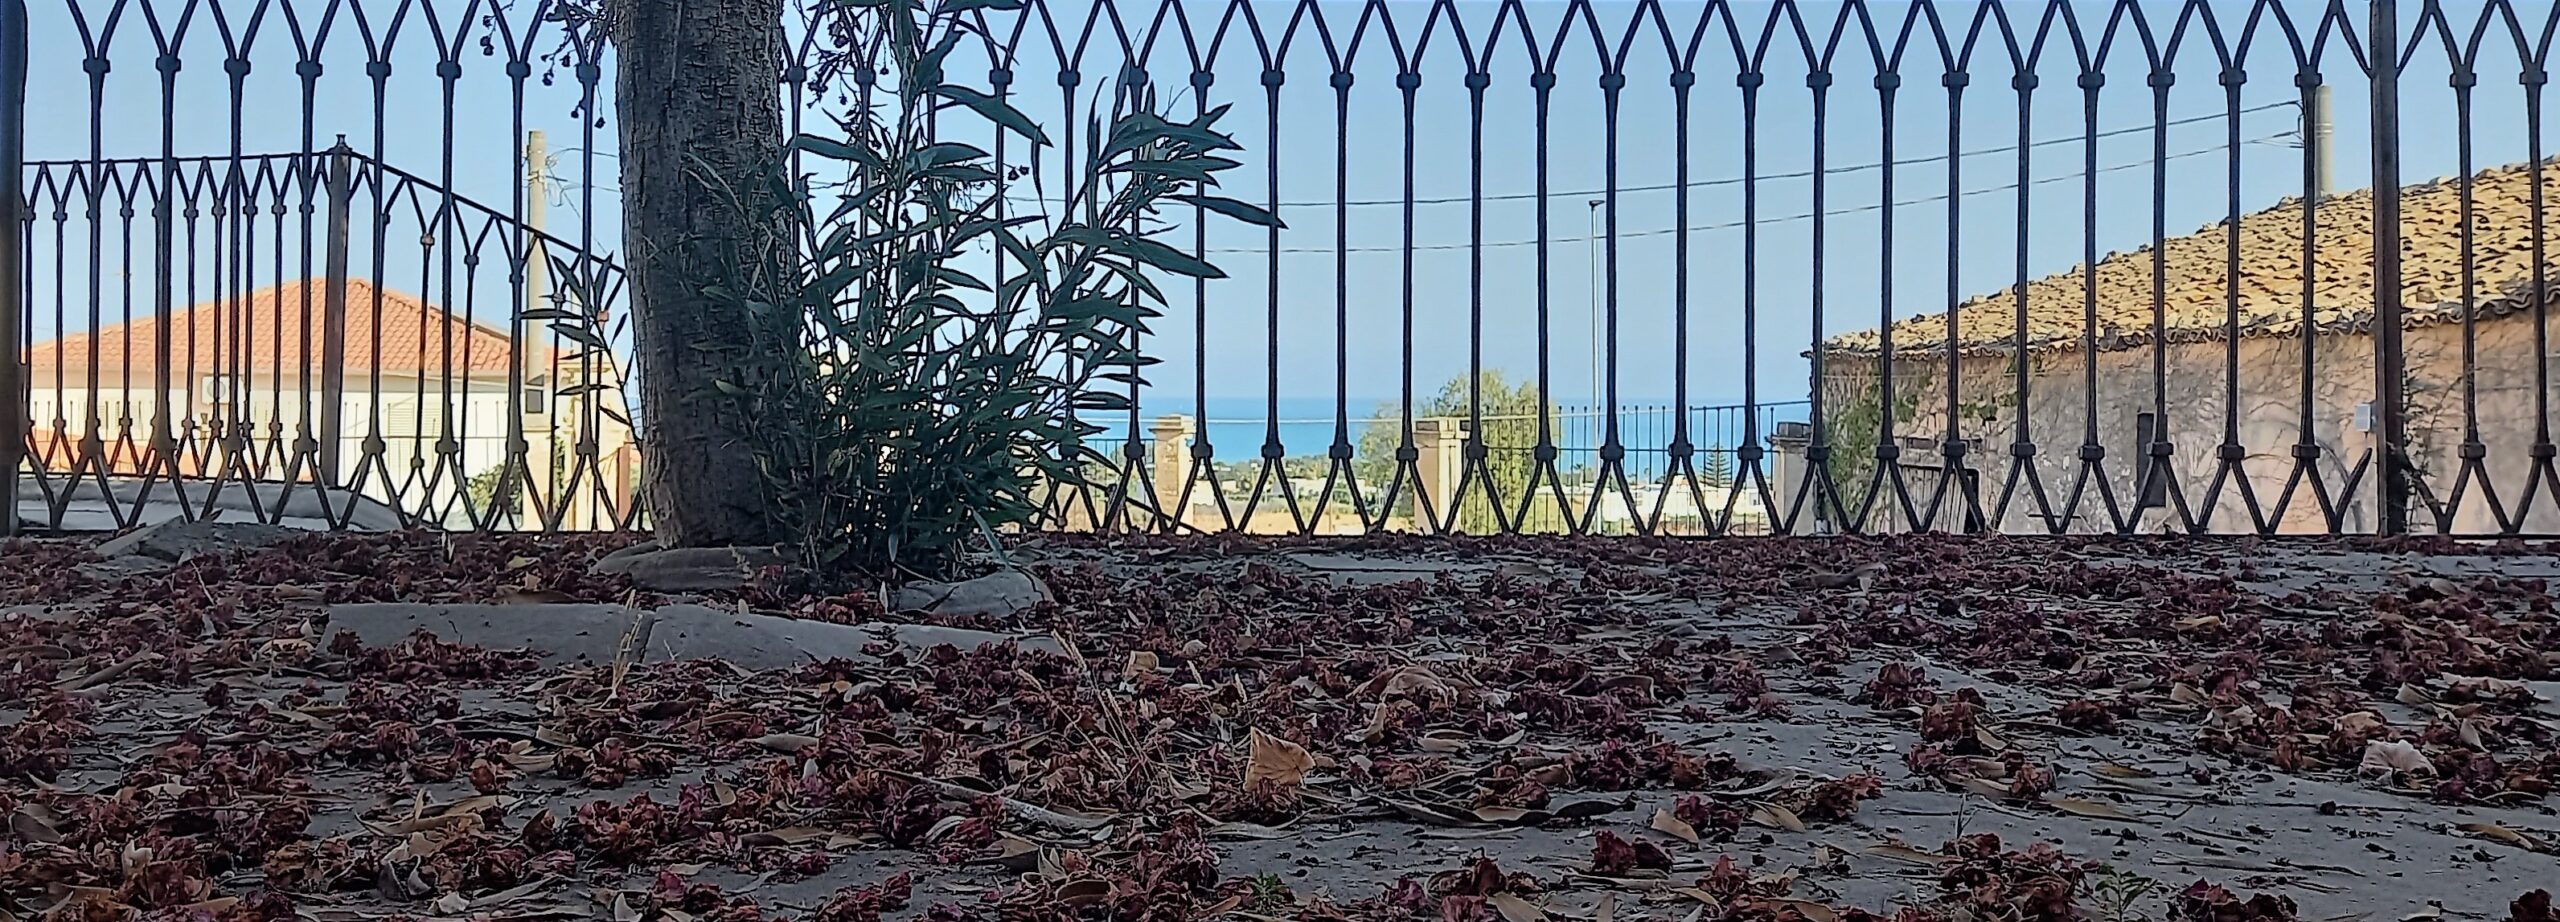 fiori sul pavimento marina di ragusa visionaria mediterraneo oleandro 1mqdb la castellana